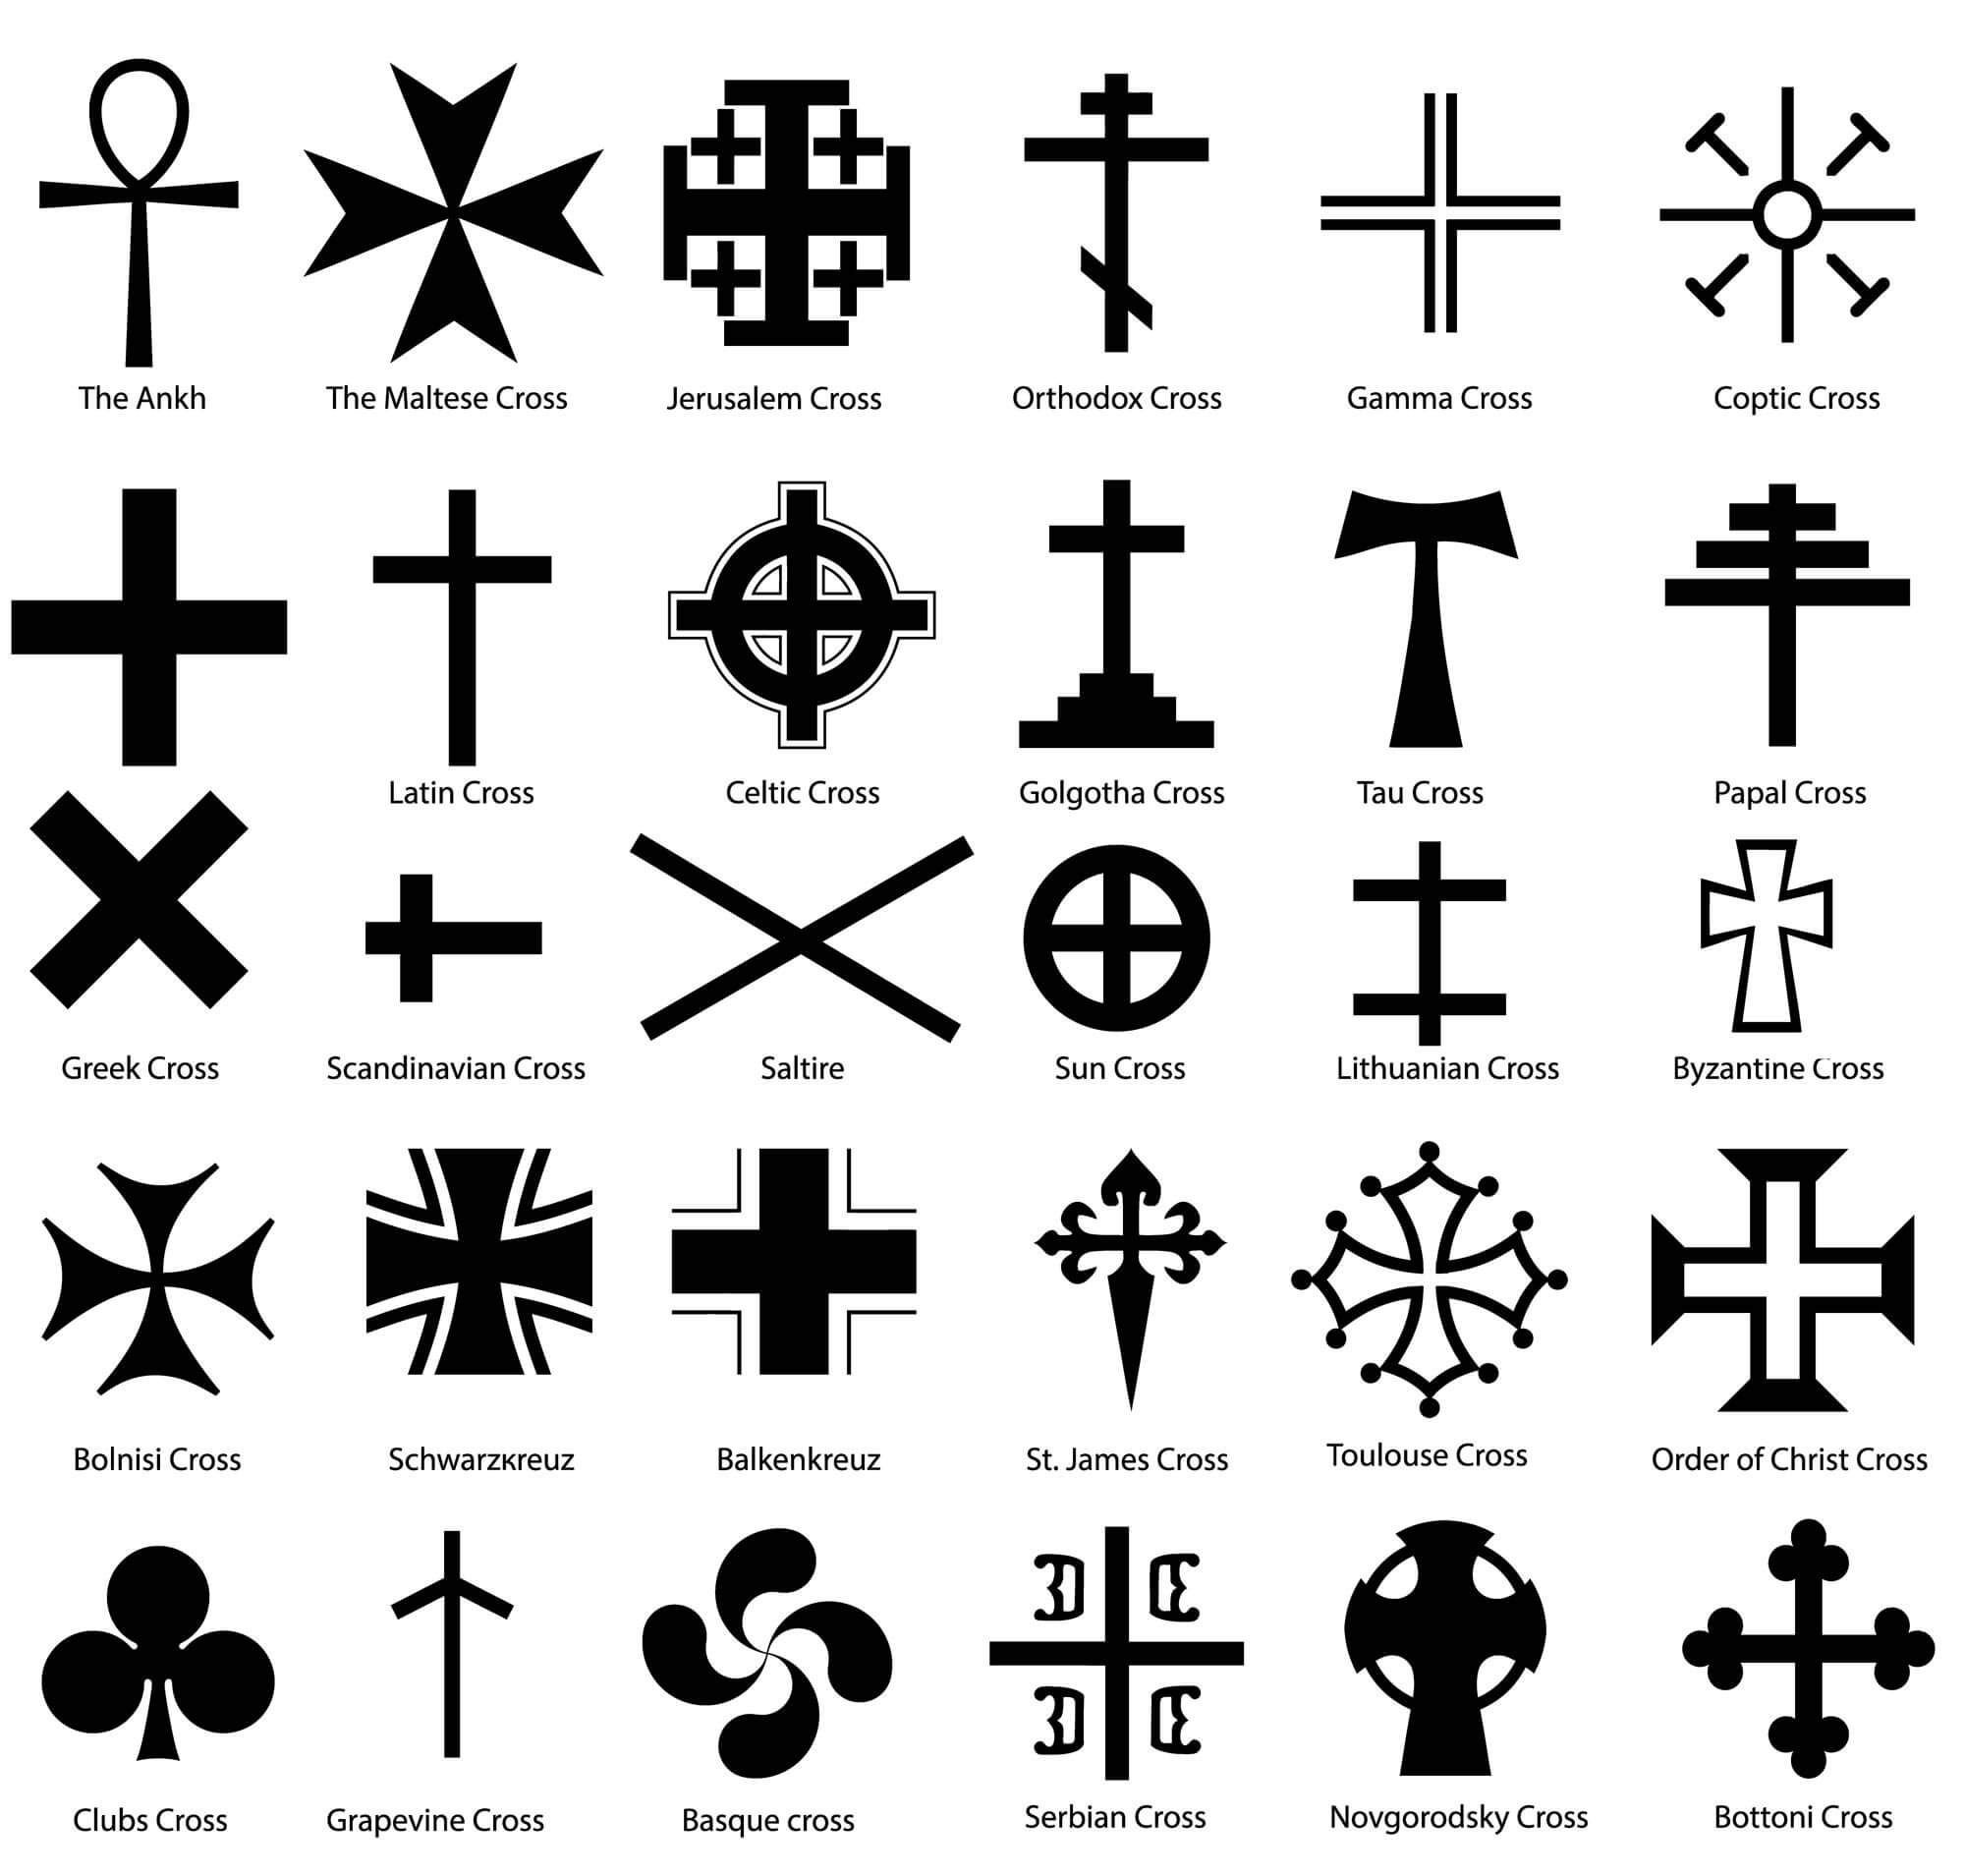 latin king signs and symbols